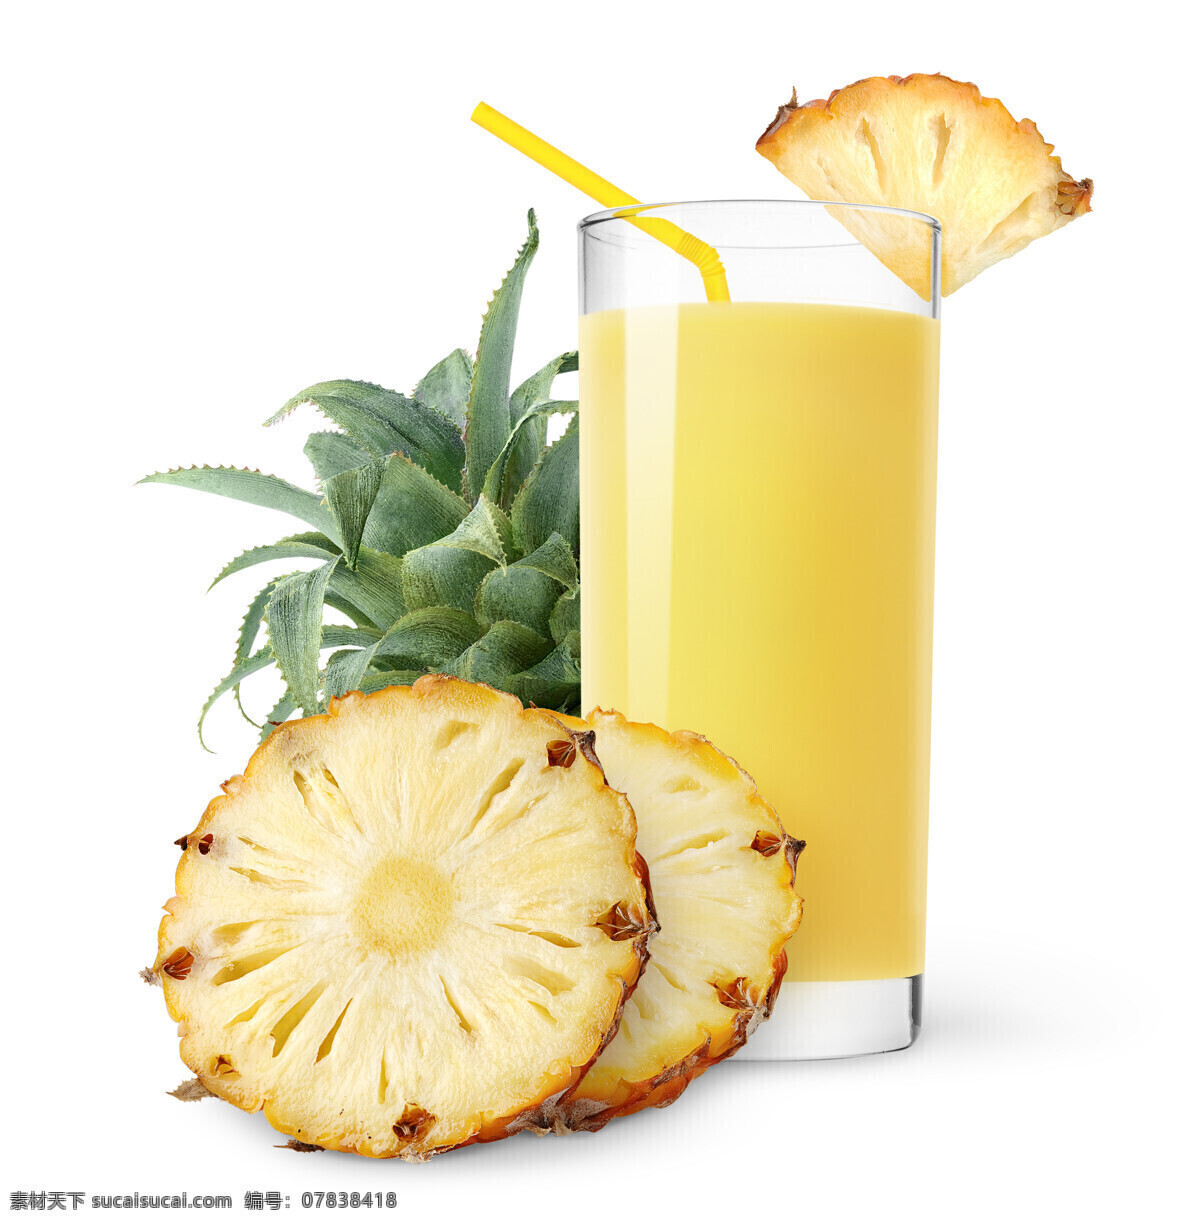 新榨菠萝汁 热带水果 新鲜 新榨 美味 菠萝 果汁 菠萝汁 餐饮美食 饮料酒水